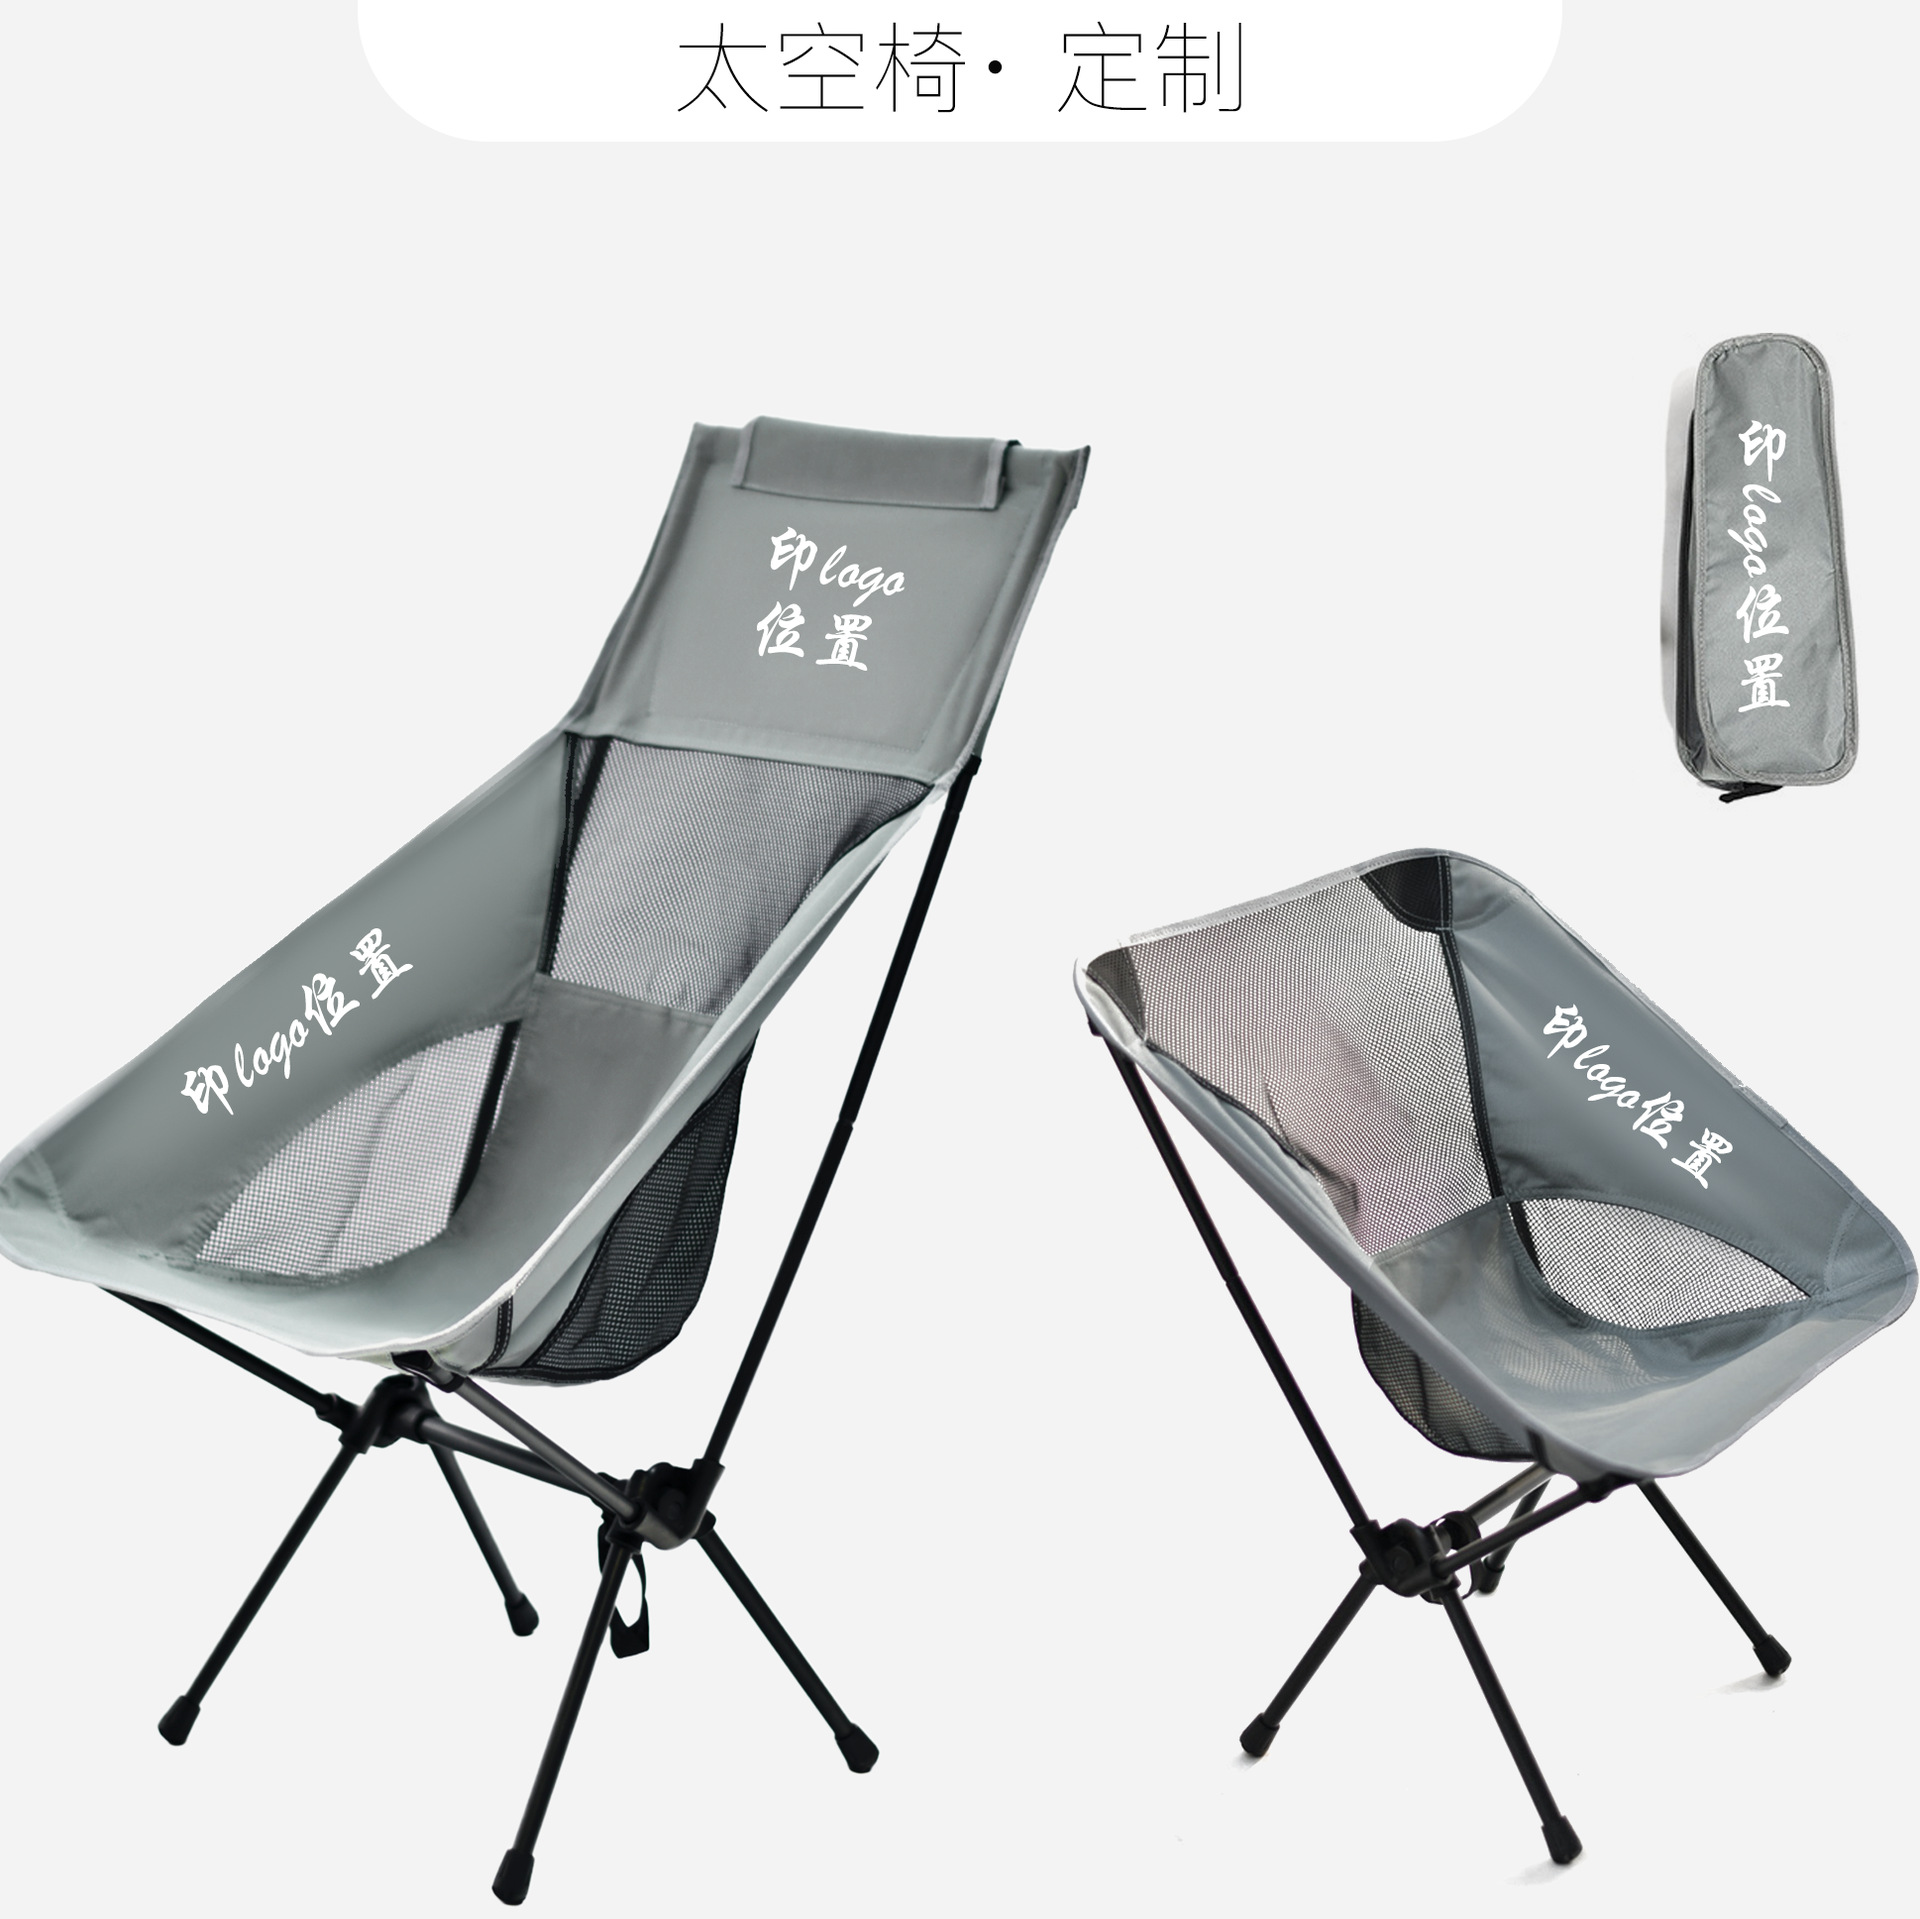 定制轻量化月亮椅户外折叠椅便携式轻便钓鱼休闲靠背沙滩椅露营椅